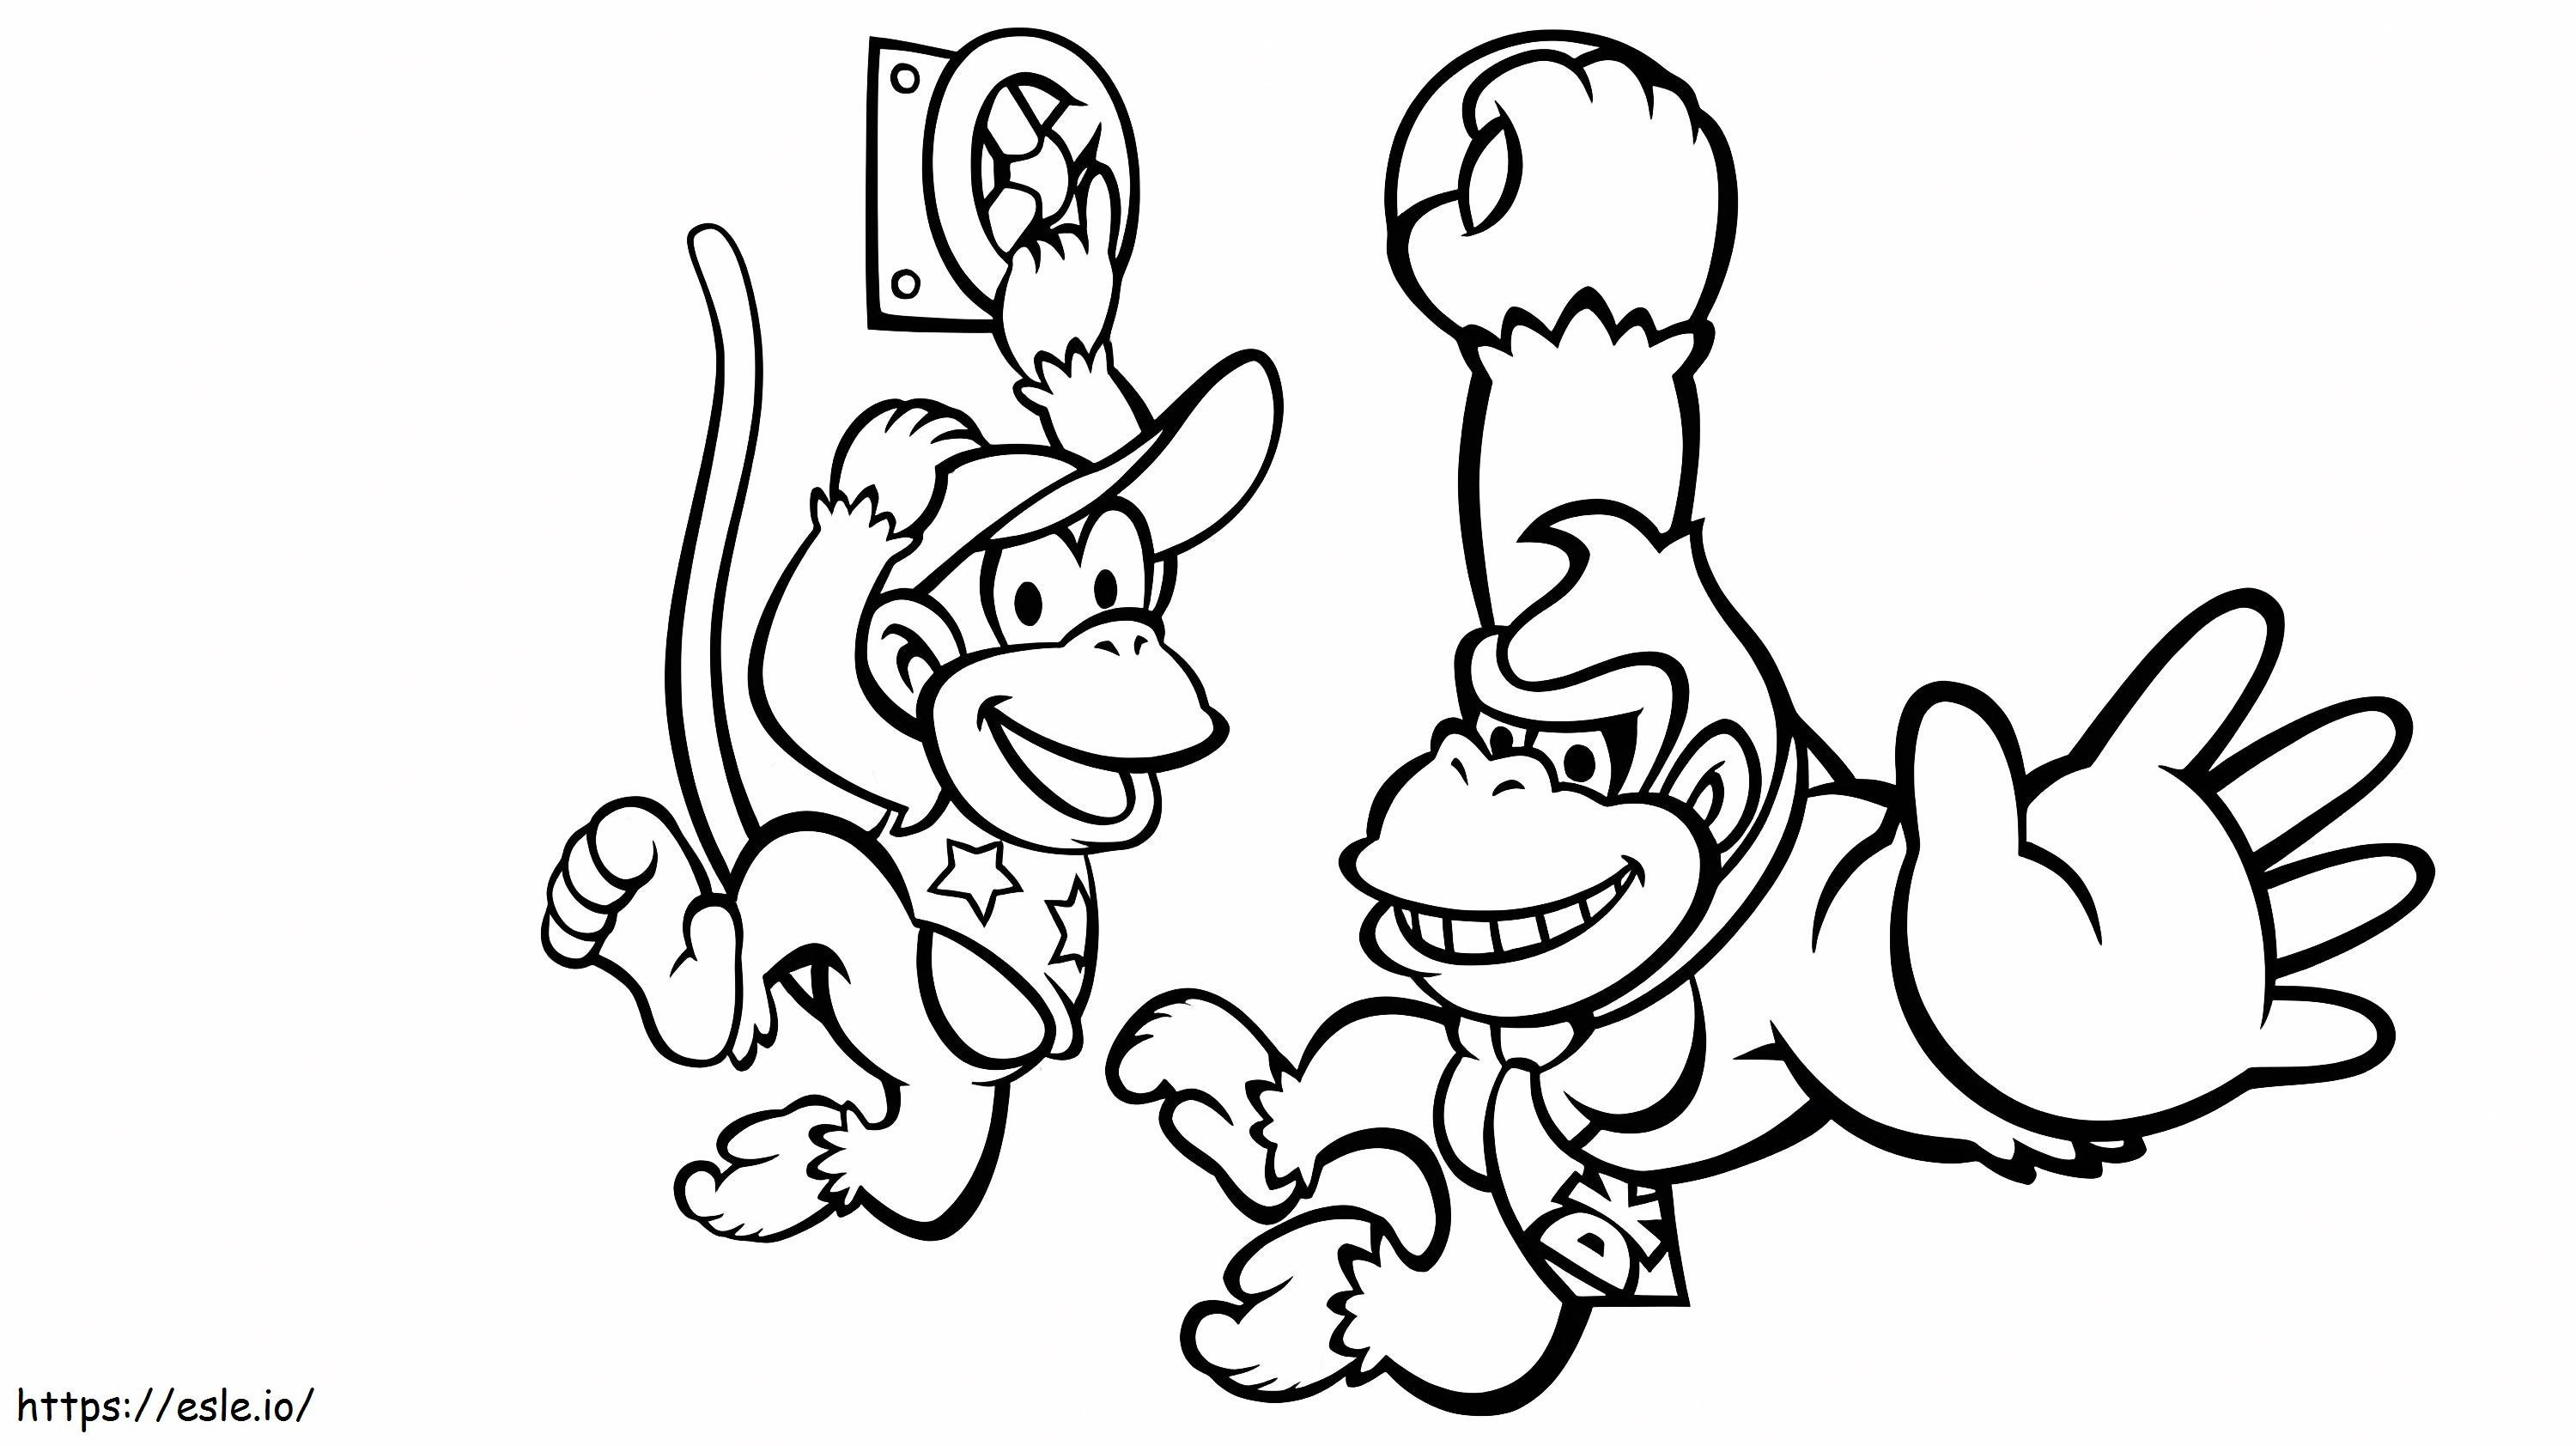 Donkey Kong e Diddy Kong para colorir